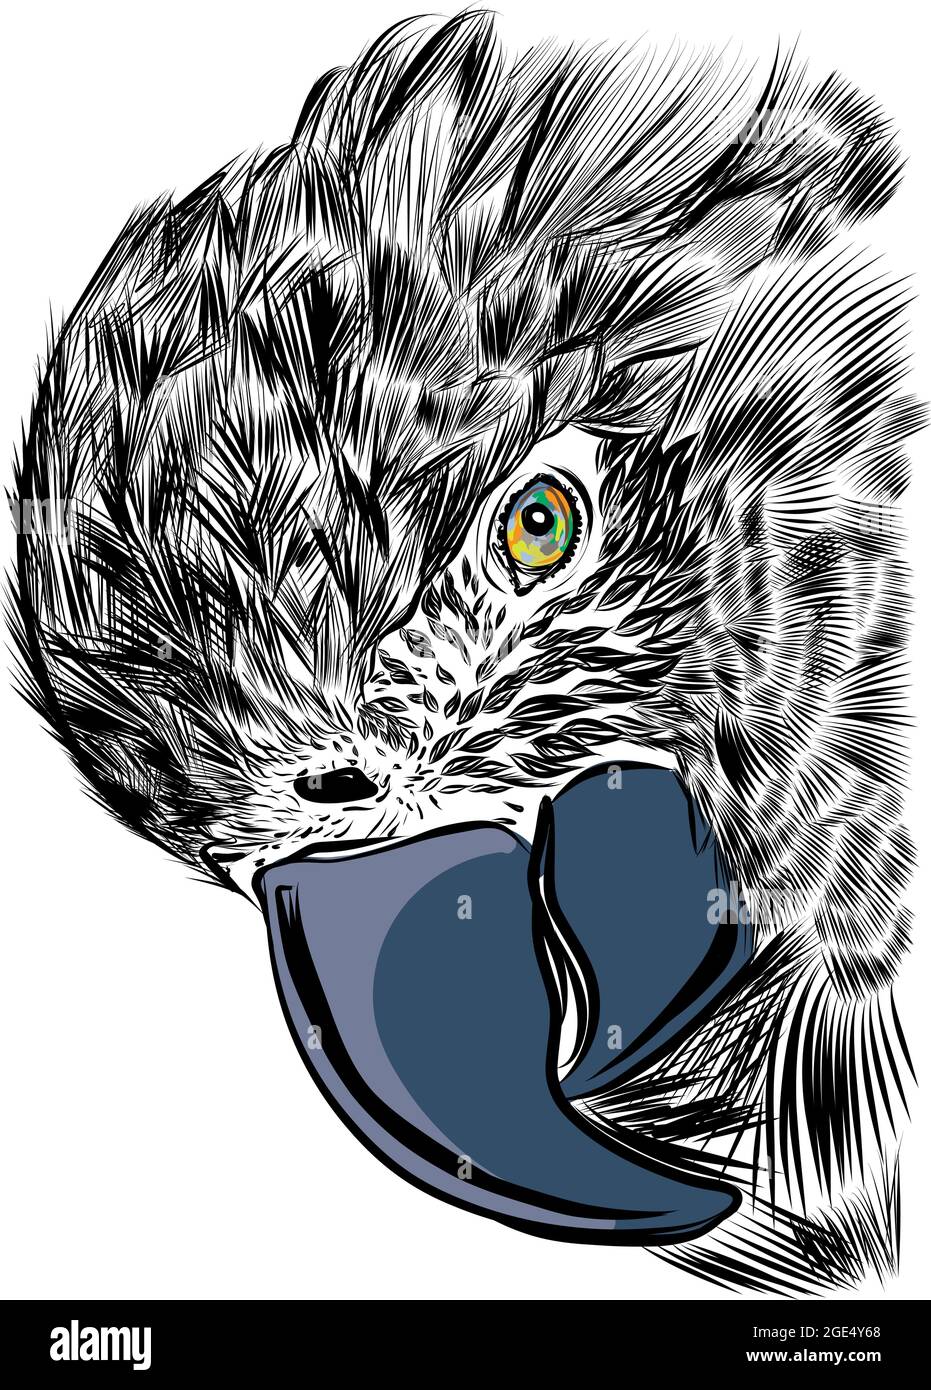 Le perroquet Macaw avec un énorme bec regarde la caméra en gros plan. Illustration vectorielle d'esquisse dessinée à la main Illustration de Vecteur